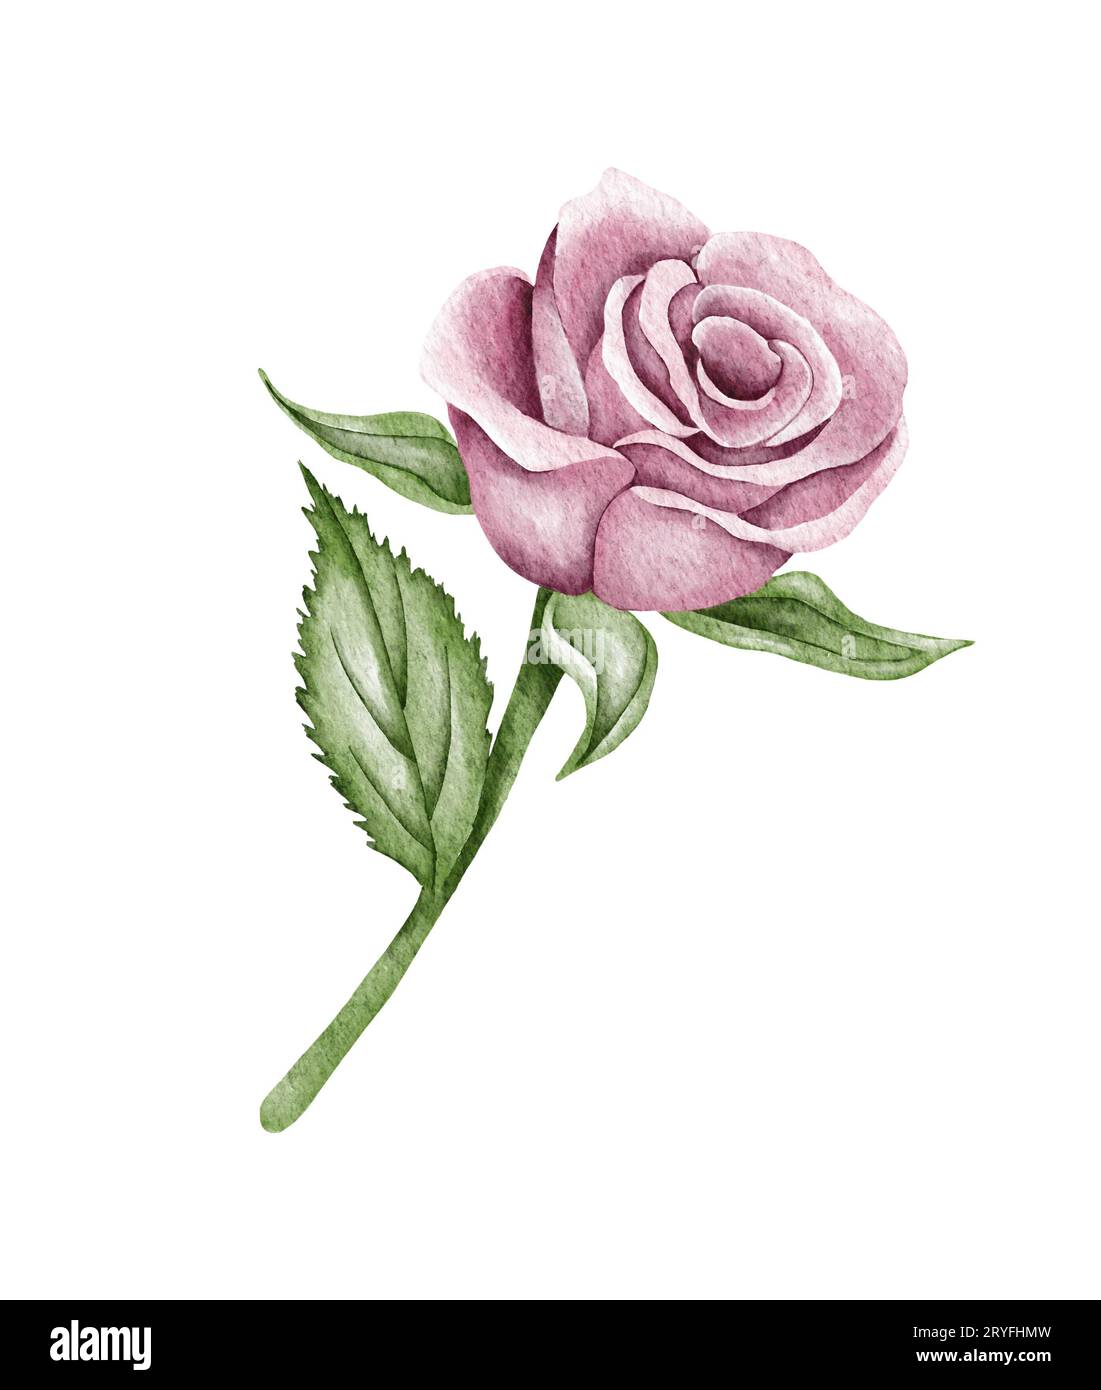 Acquerello rosa fiore di rosa, foglie verdi, fiore chiuso. Delicata illustrazione ad acquerello Foto Stock